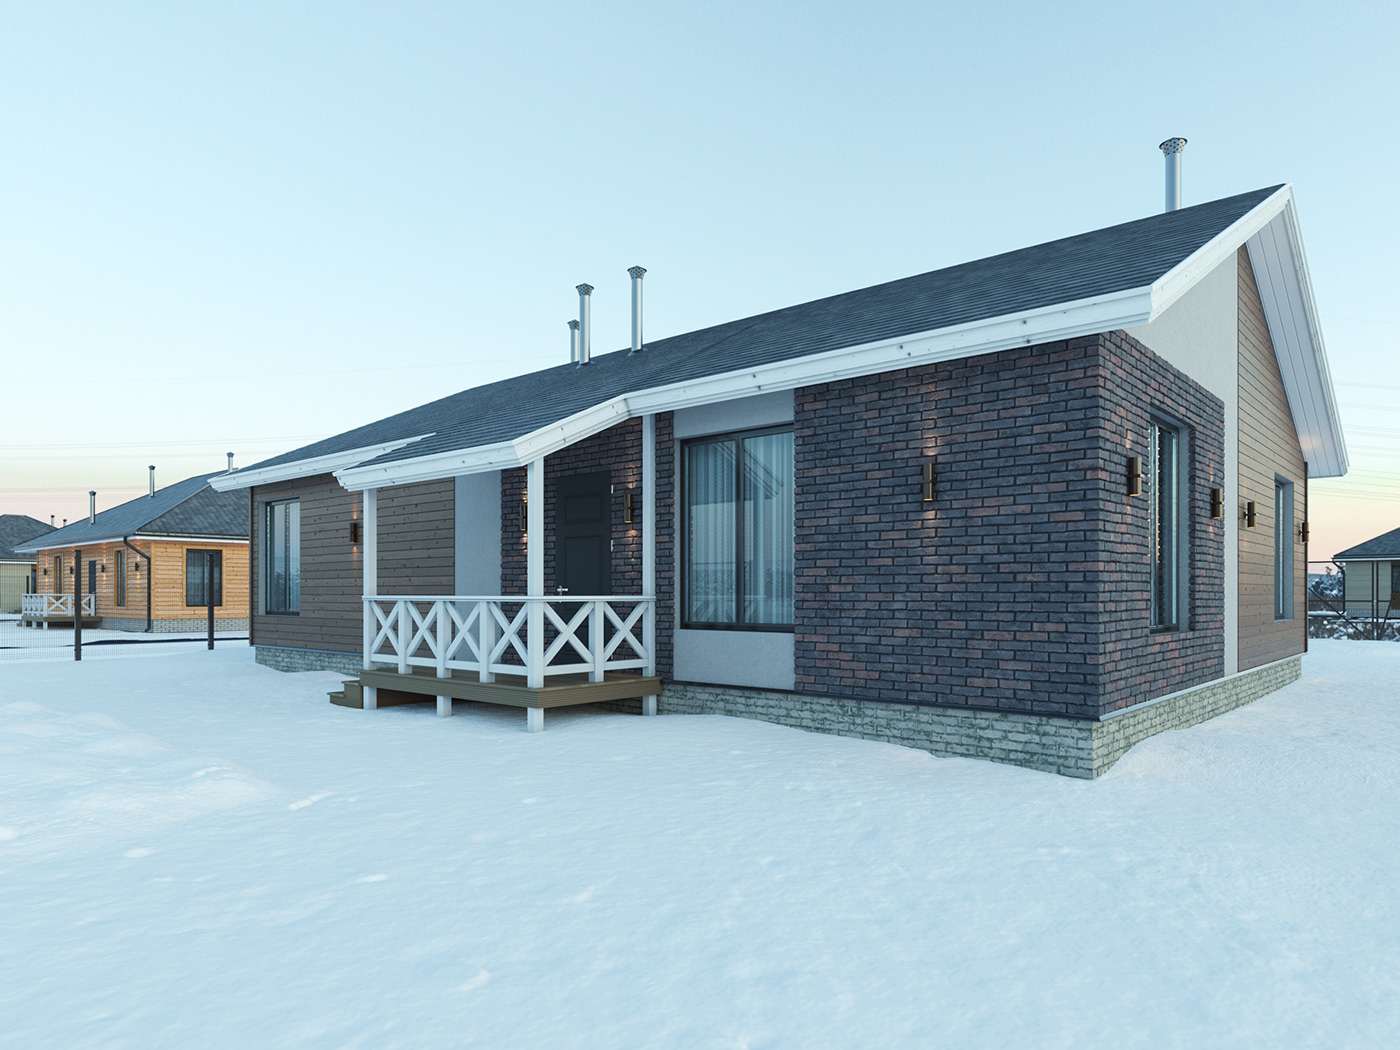 3d визуализация  3d графика 3ds max corona Render visualization wooden house визуализация Деревянный дом экстерьерная визуализация